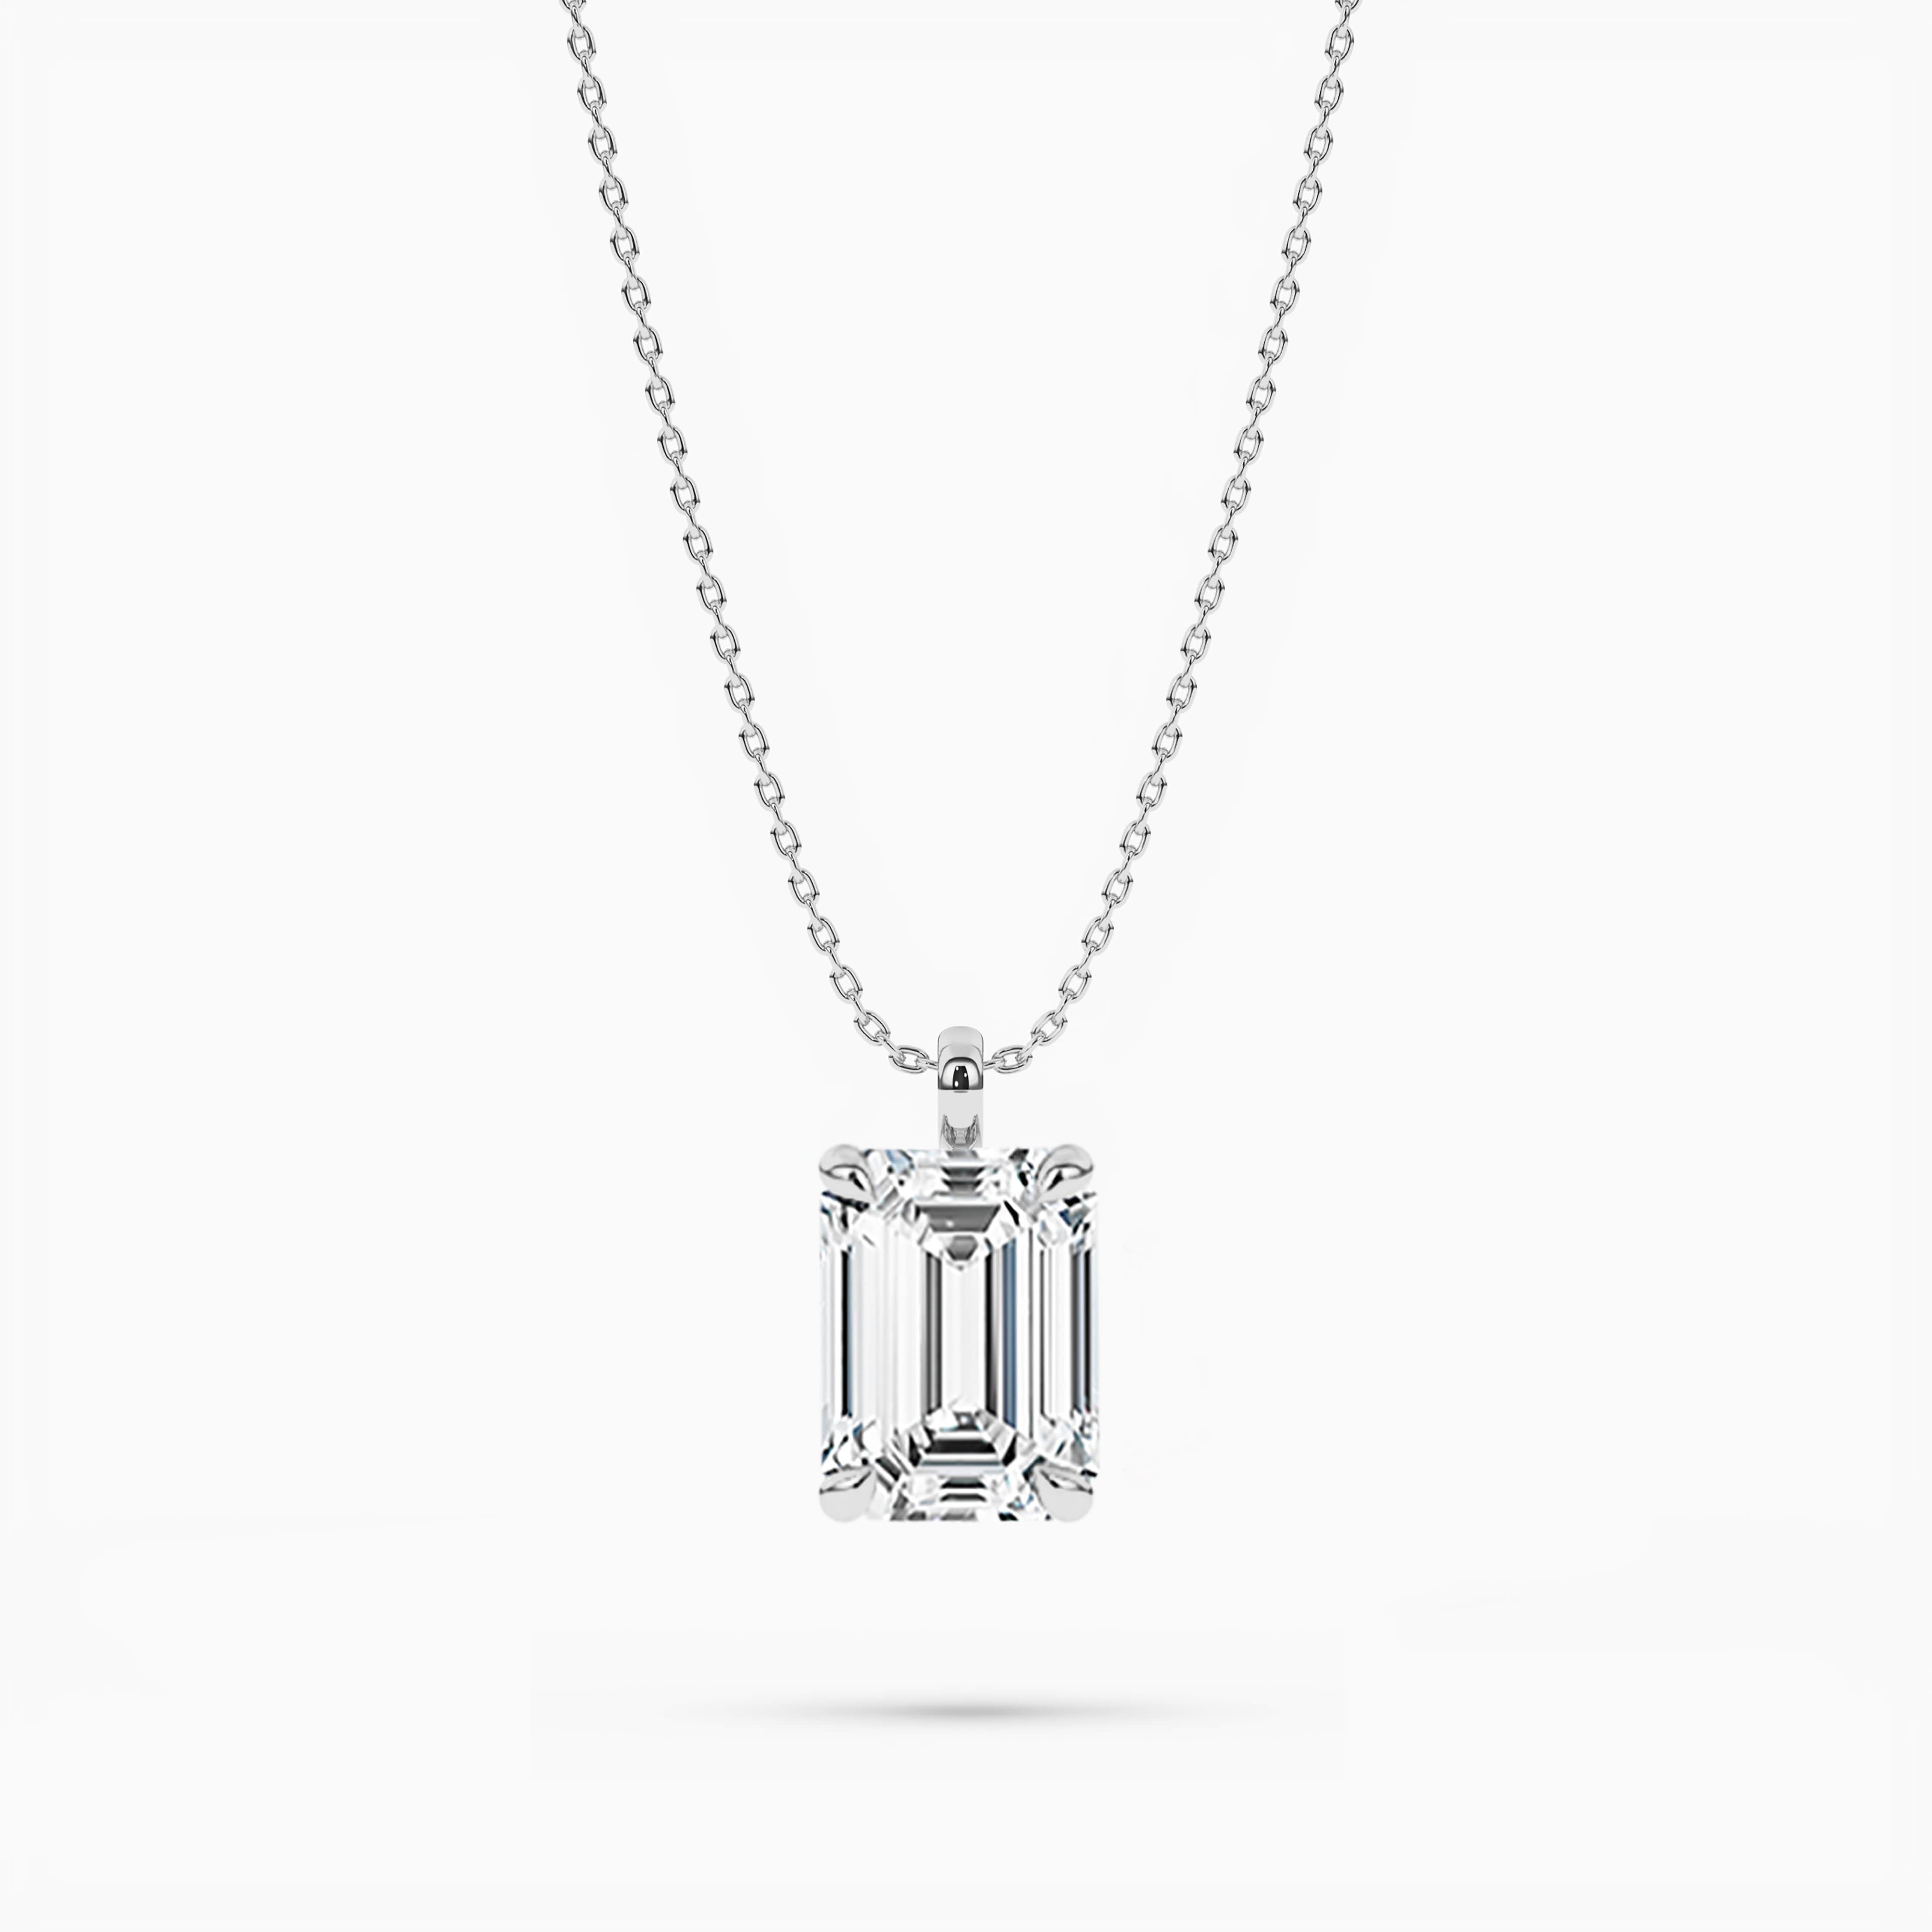 Emerald Cut Diamond Pendant Necklace in White Gold